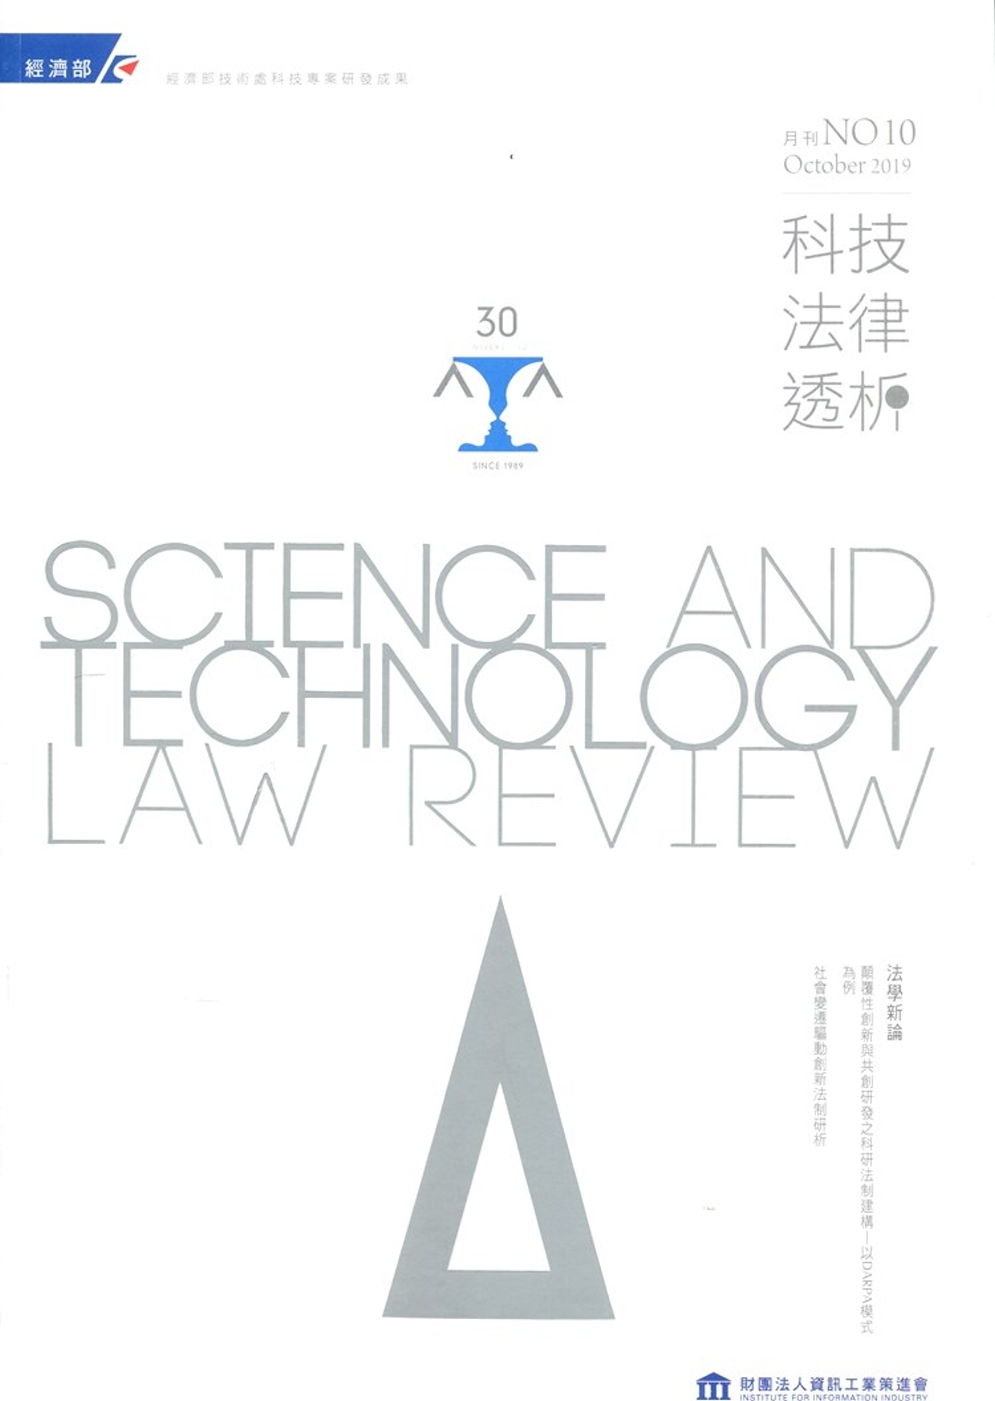 科技法律透析月刊第31卷第10期